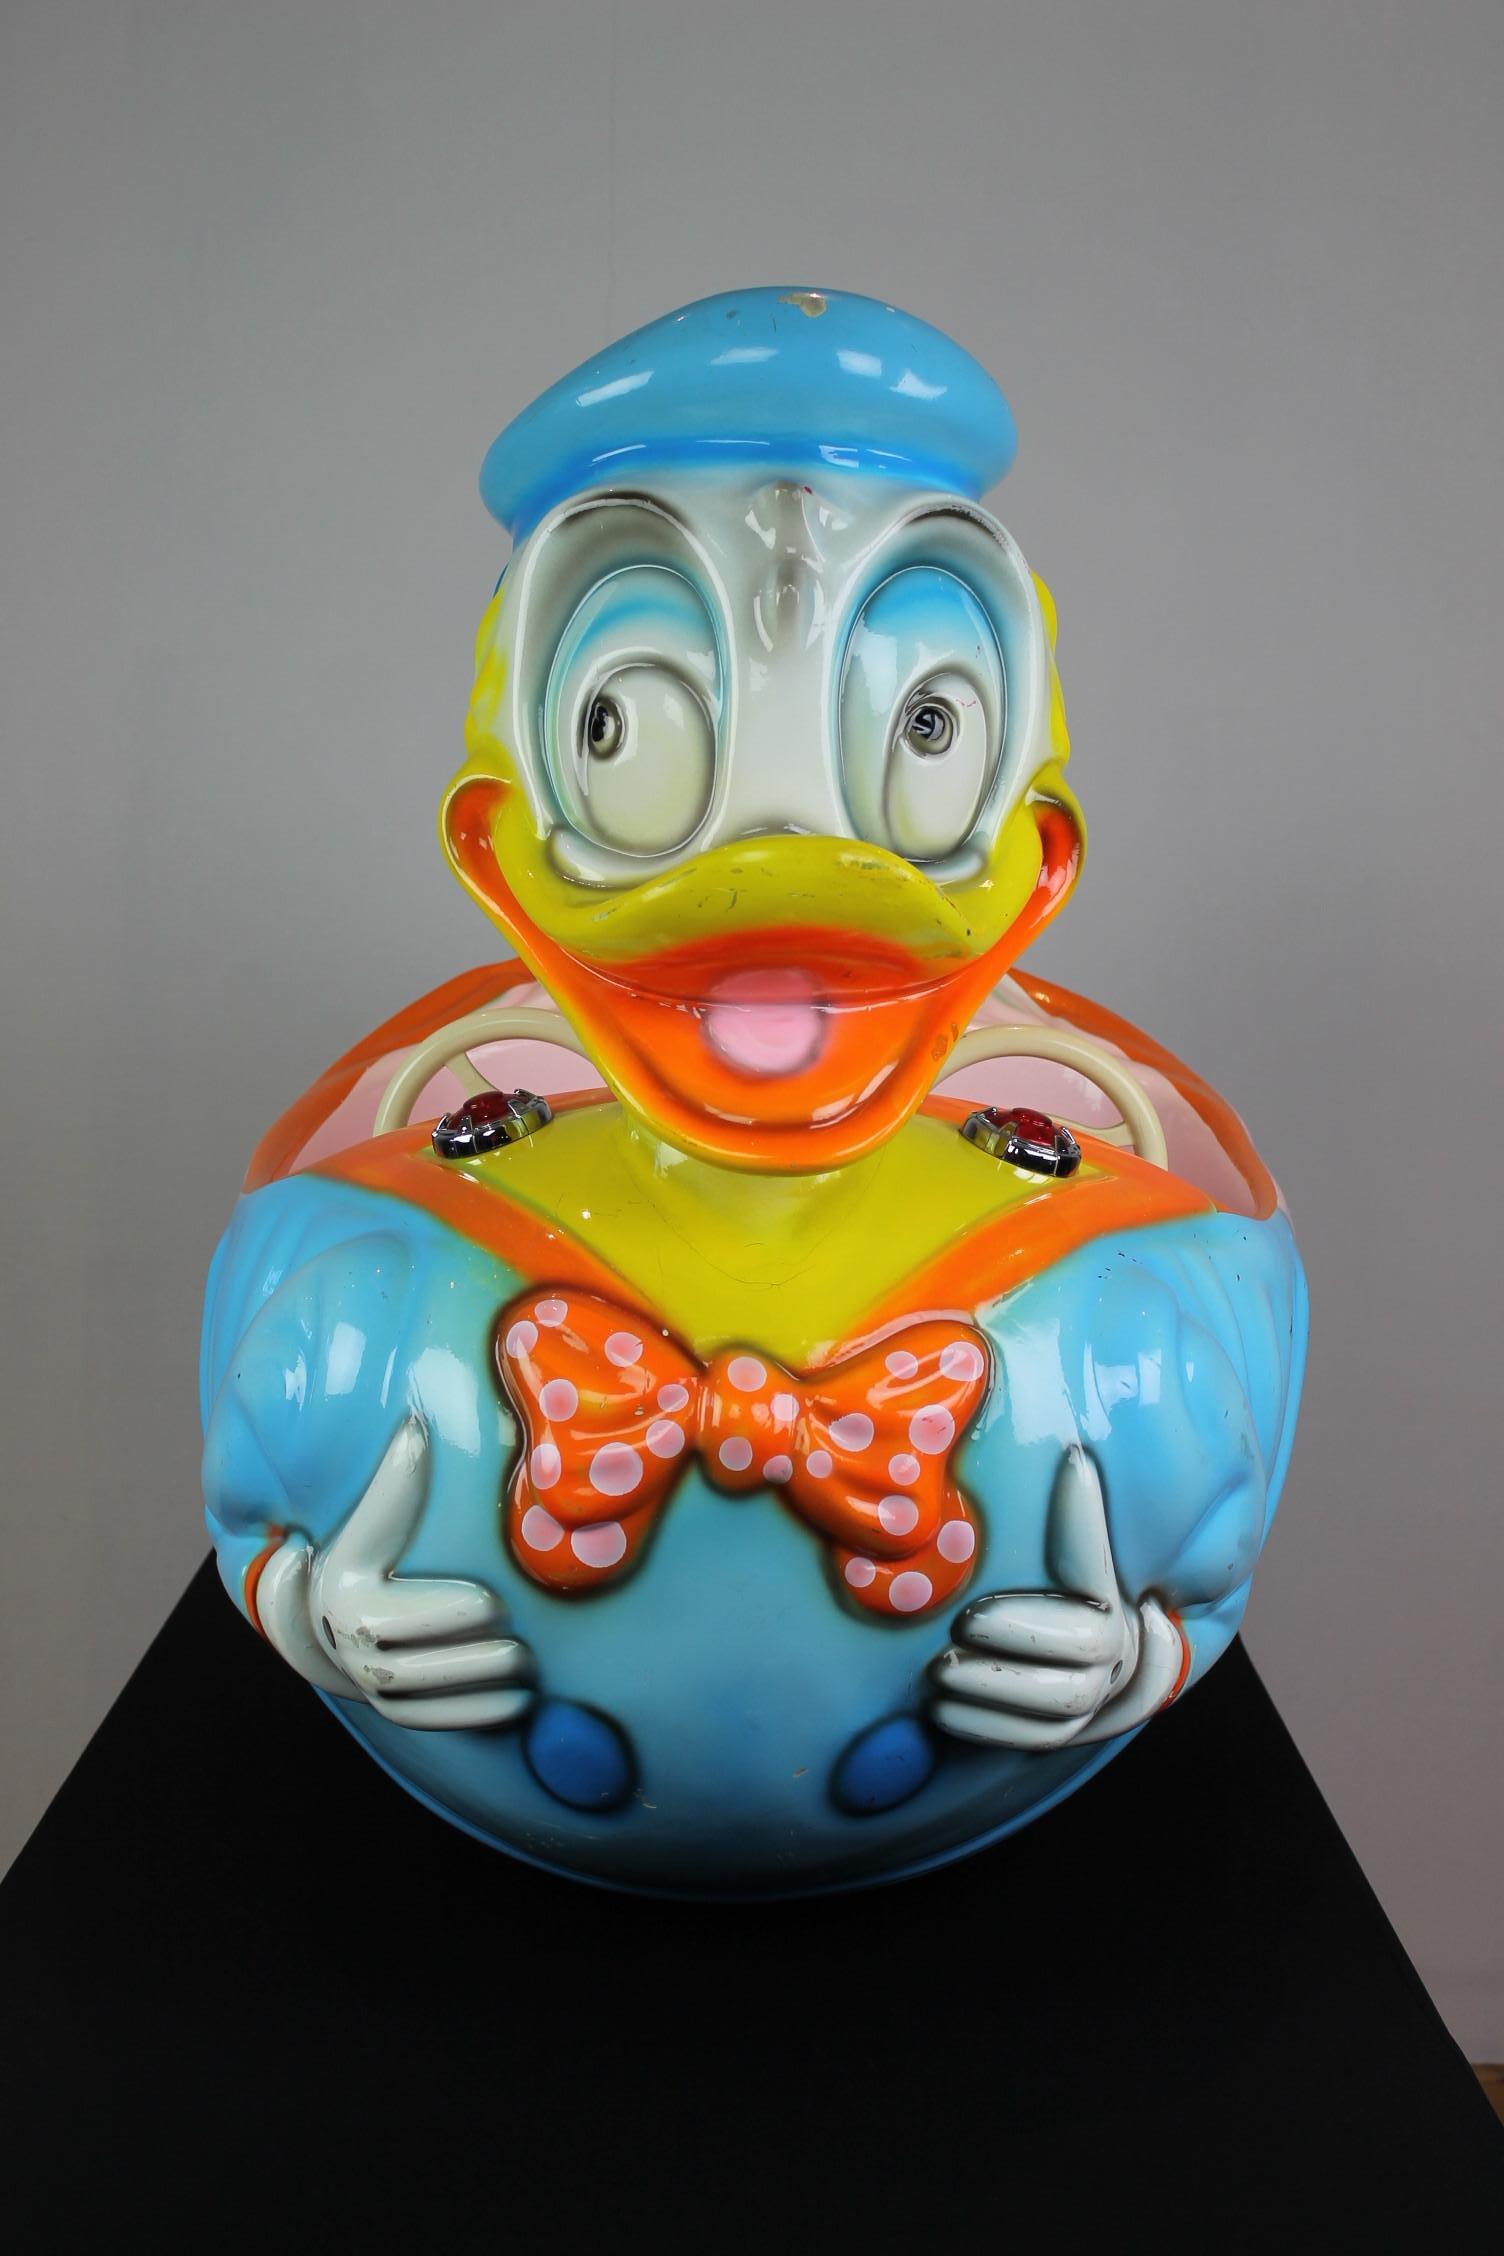 Donald Duck Fahrgeschäft oder Kinderfahrgeschäft. 
Ein Karussell Donald Duck in hellen Farben, die Sie lächeln macht. 
Es handelt sich um ein zweisitziges Kinderfahrgeschäft mit zwei Lenkrädern in Form von Donald Duck, der bekannten